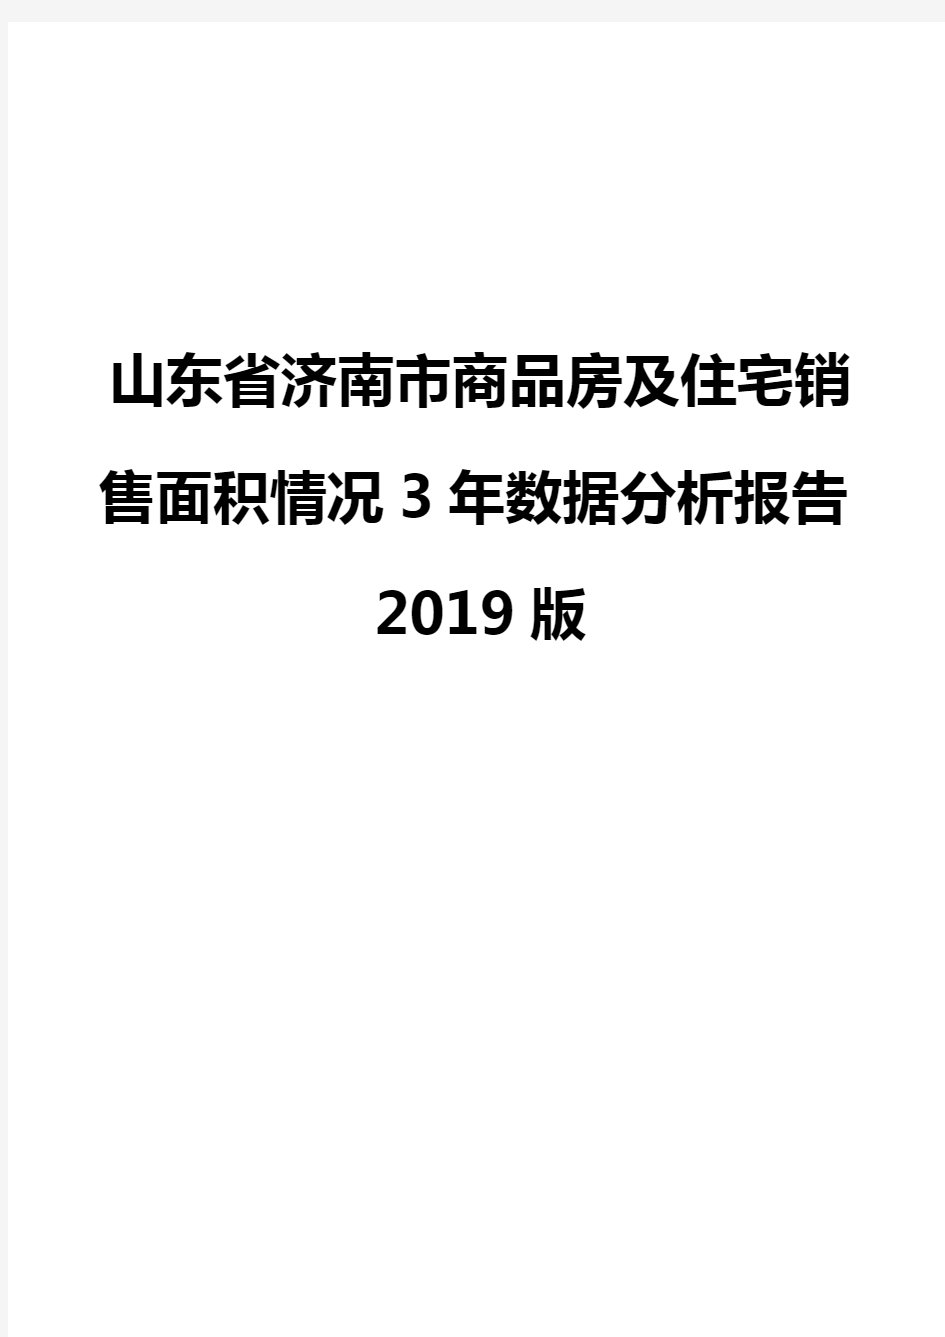 山东省济南市商品房及住宅销售面积情况3年数据分析报告2019版